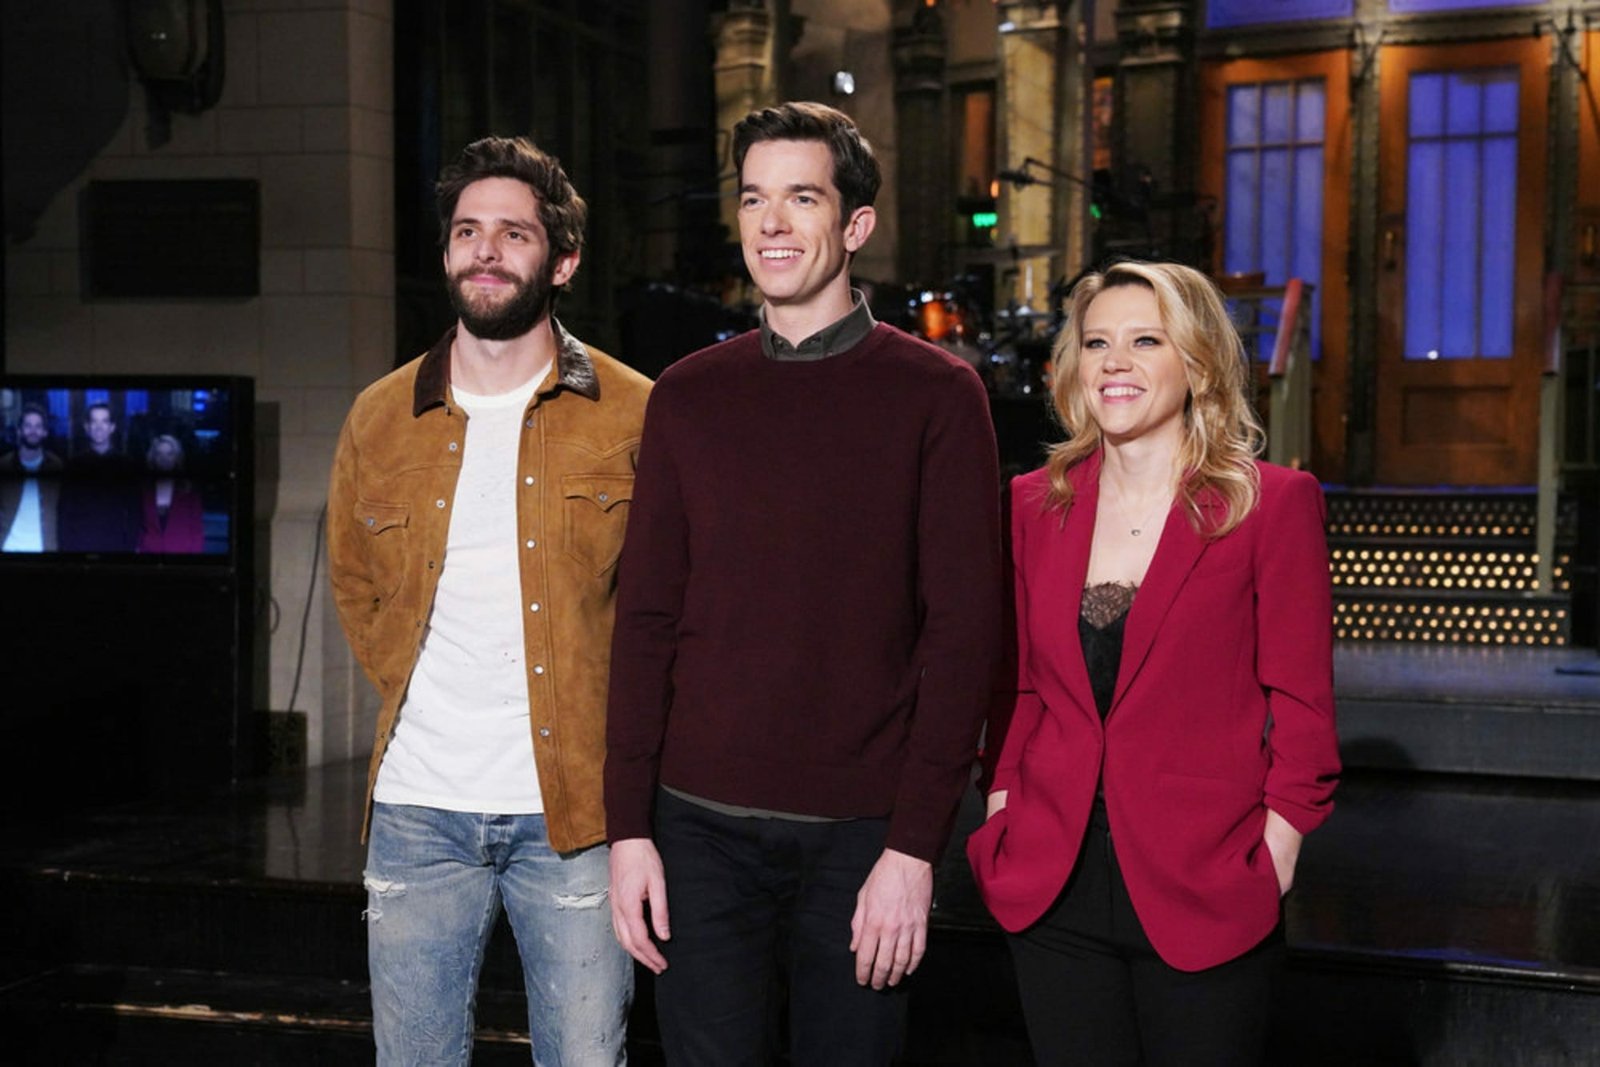 When Will Saturday Night Live Season 48 Premiere In 2022?